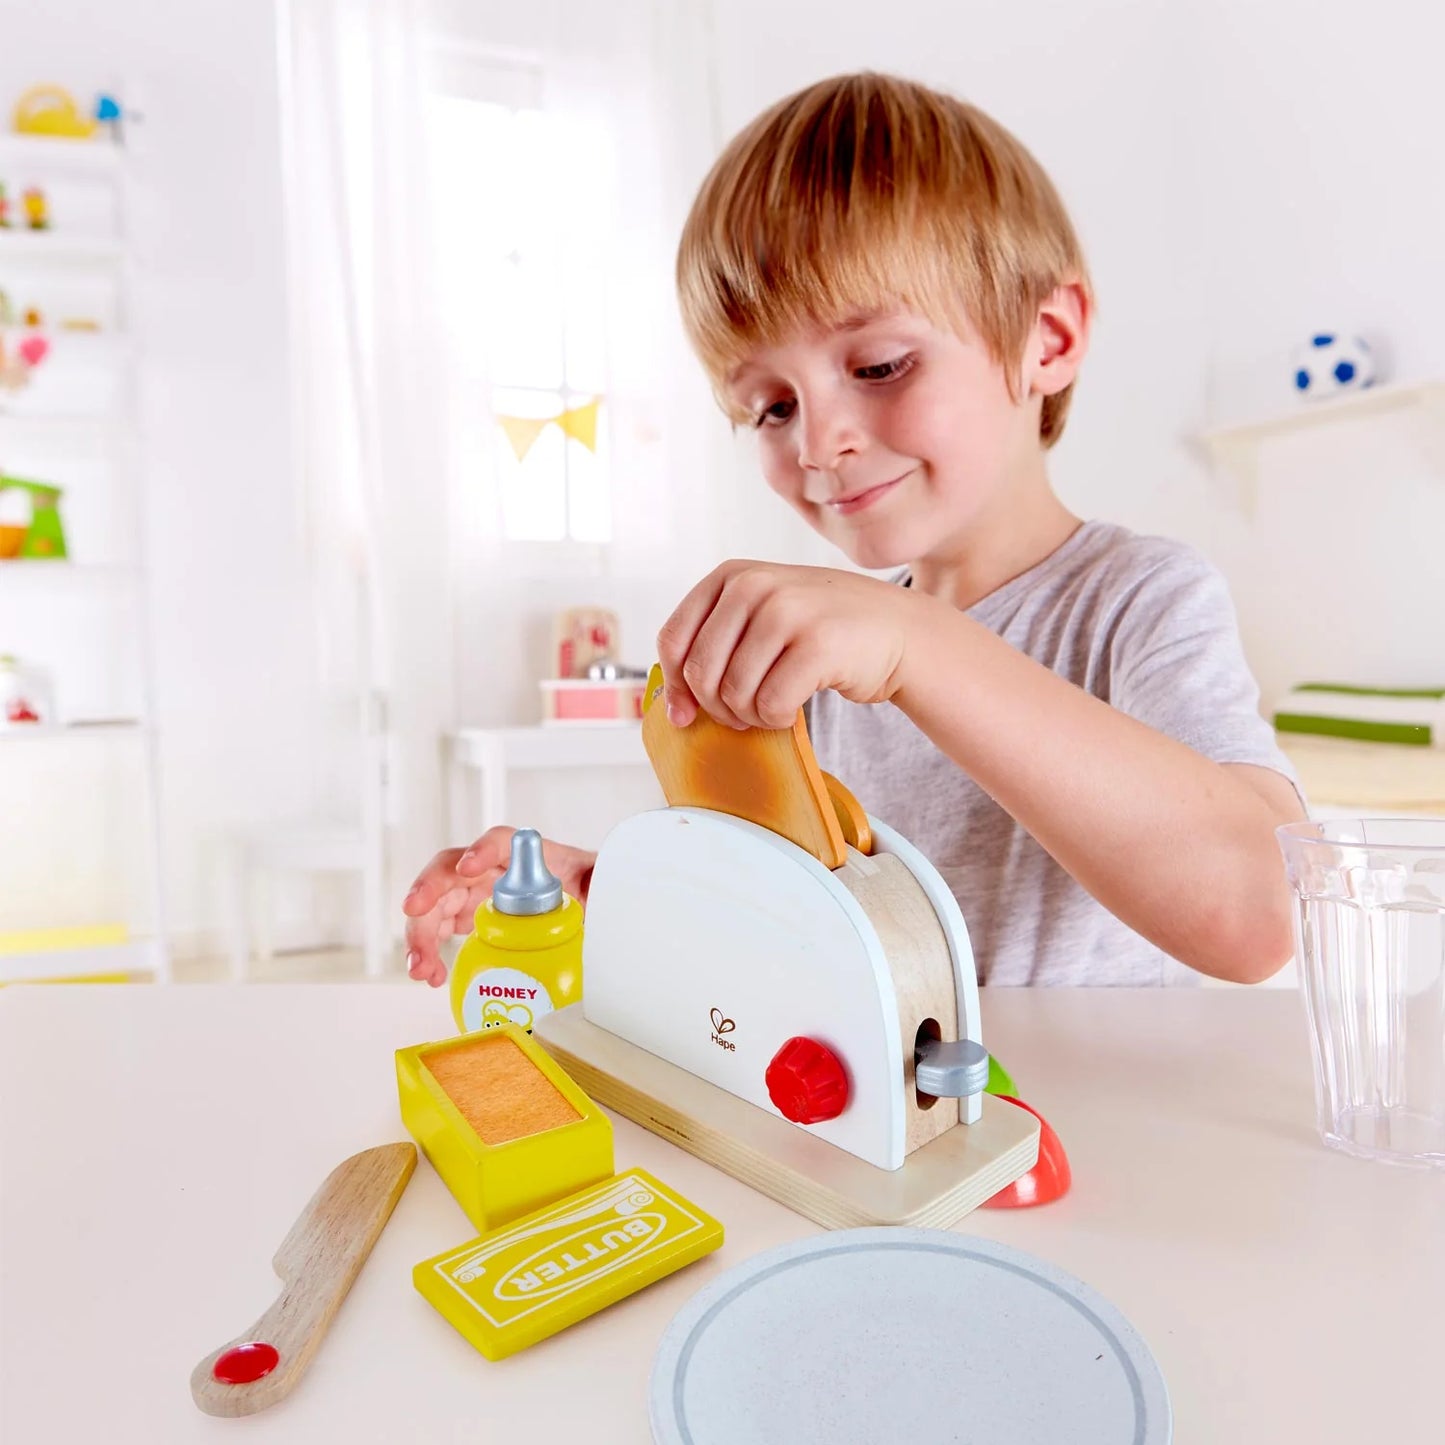 Hape pop-up toaster set toy for kids 